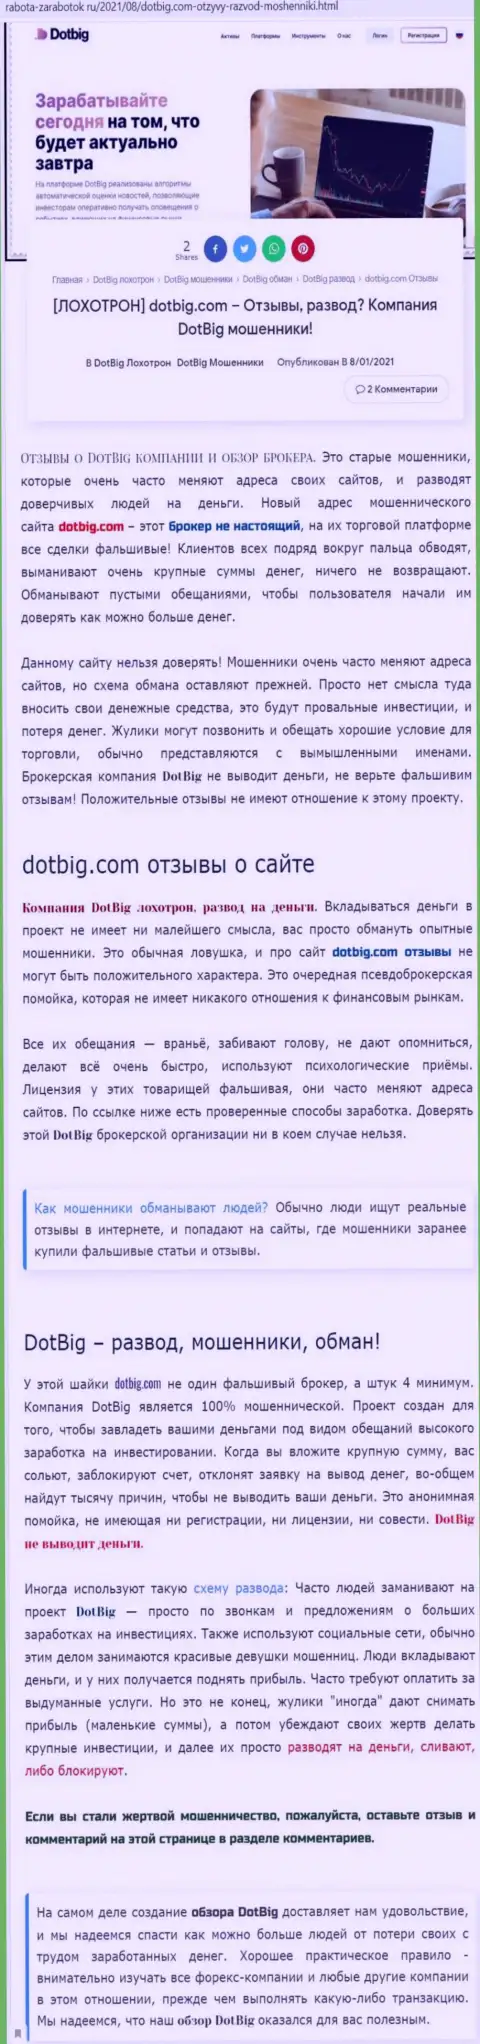 DotBig Com депозиты не отдает обратно - это ЛОХОТРОНЩИКИ !!! (обзор мошеннических комбинаций организации)